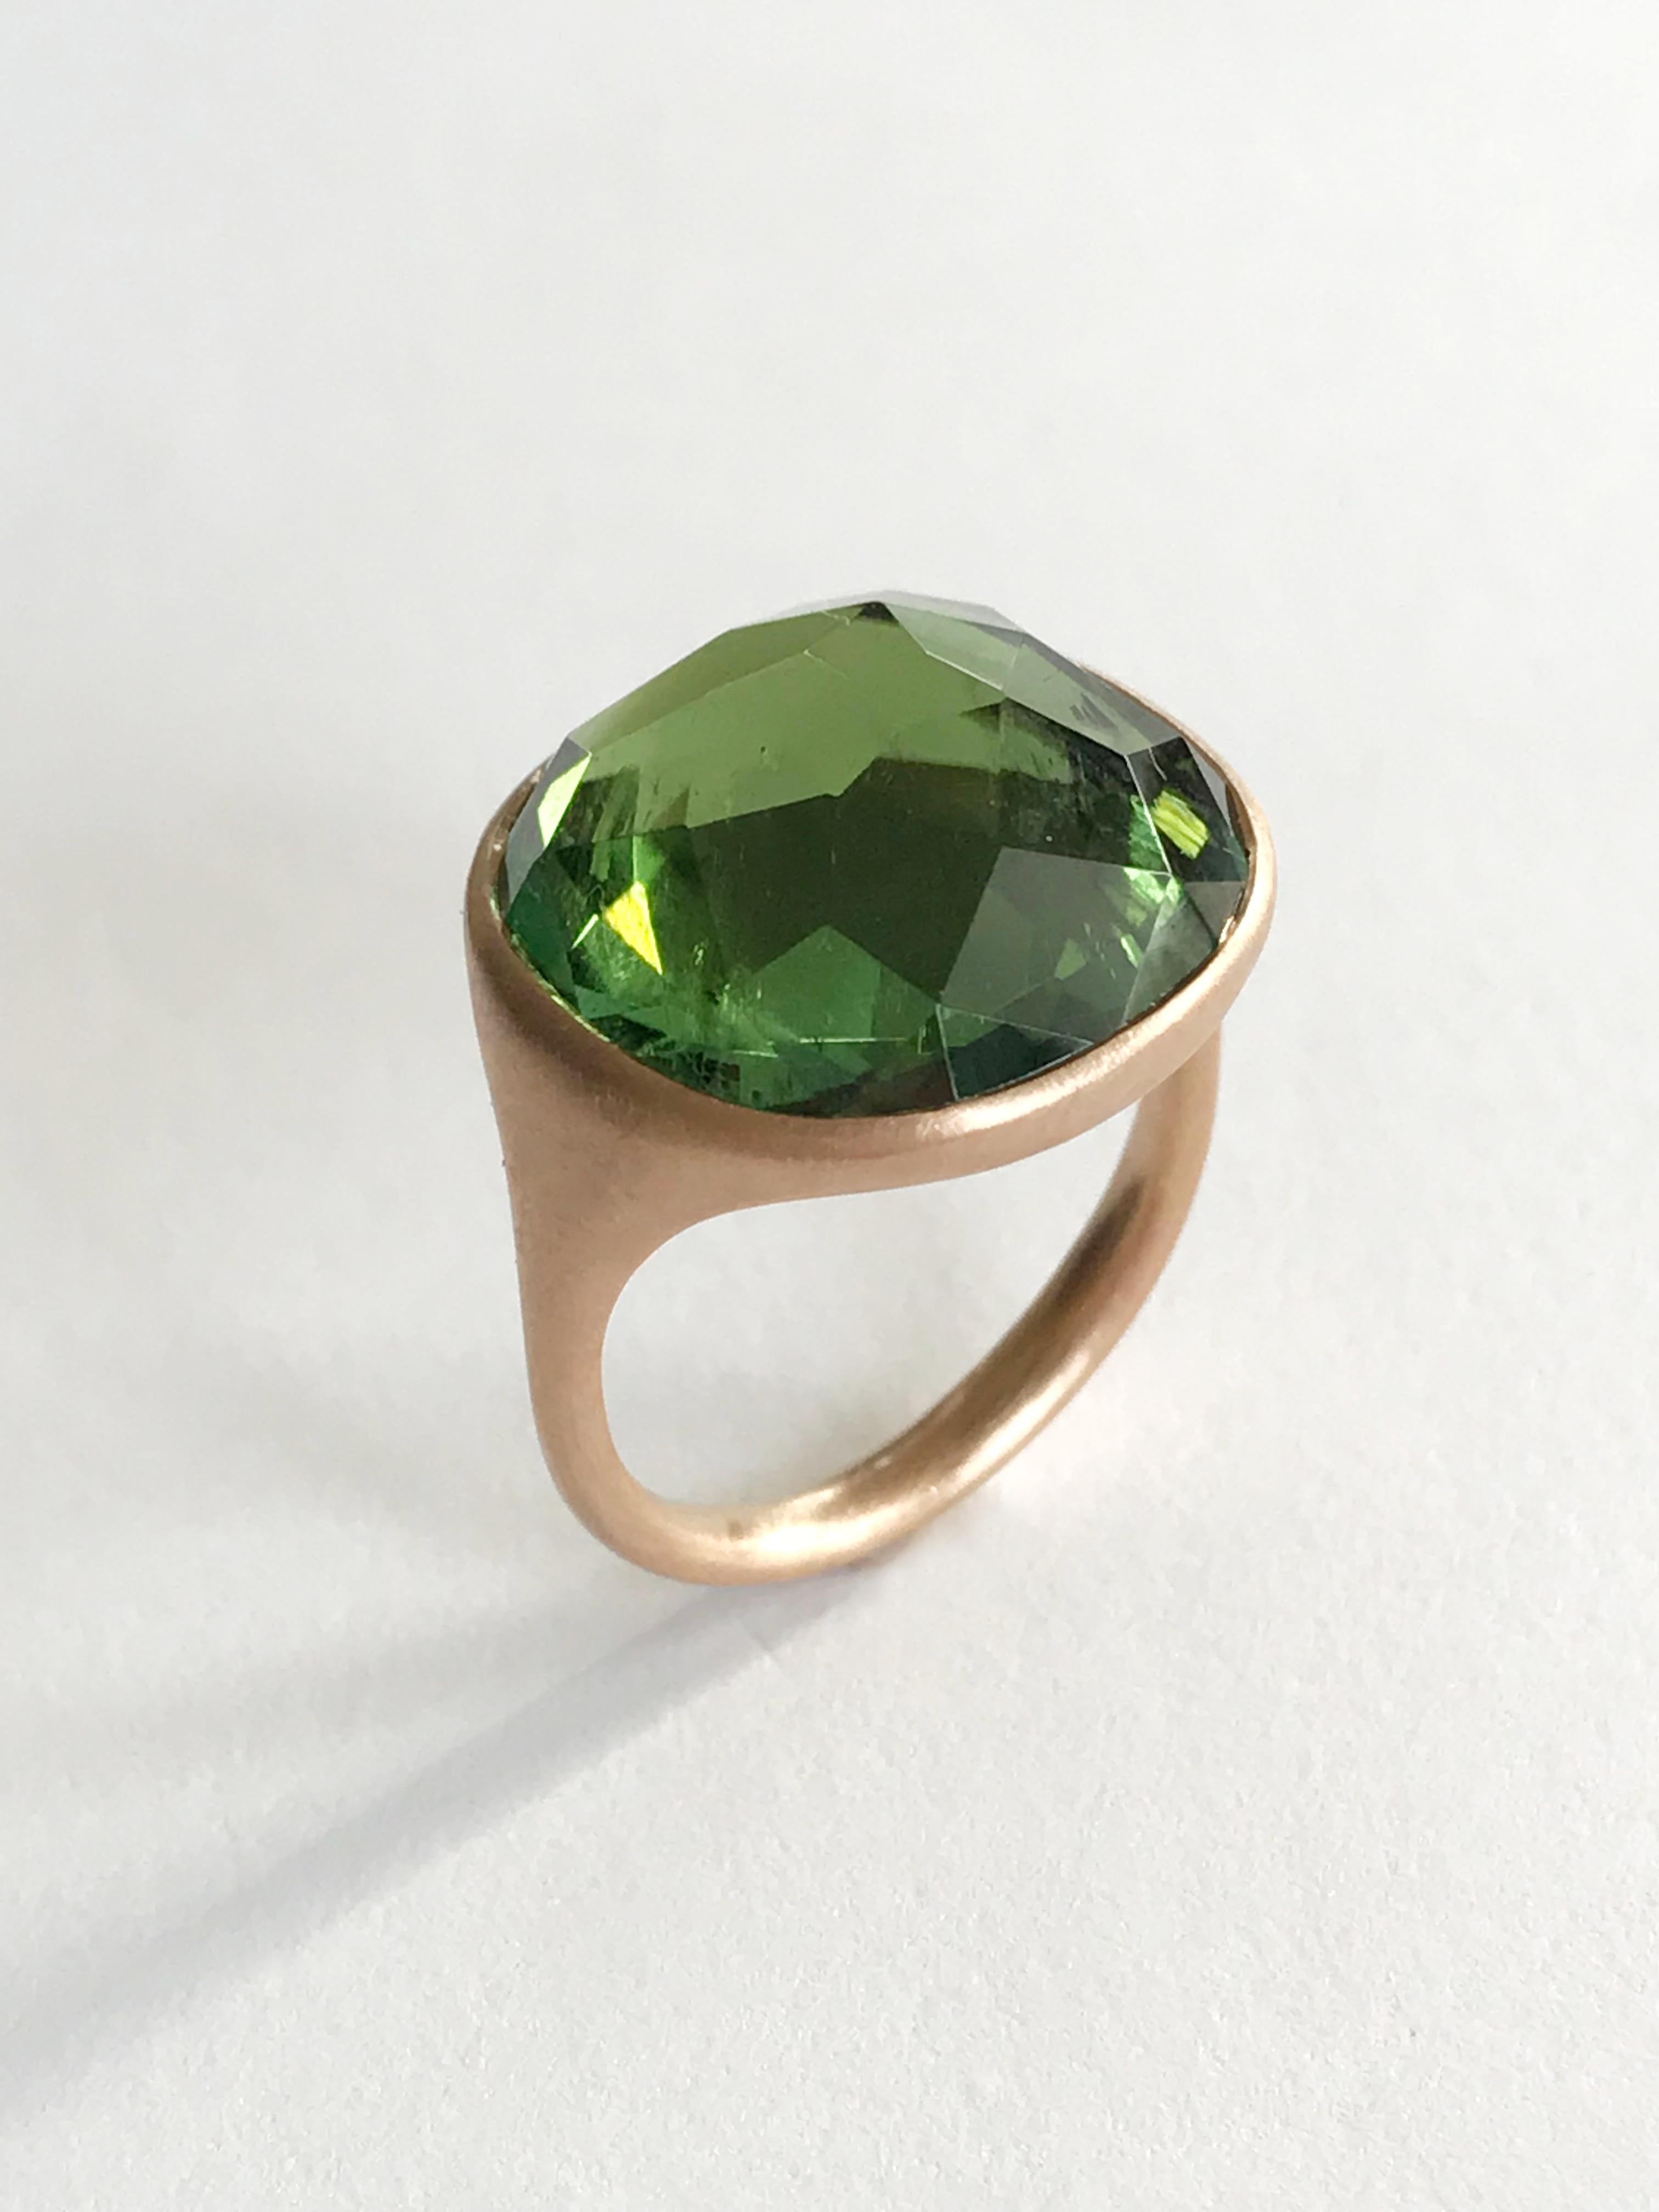 Dalben Green Toumaline Rose Gold Ring 1